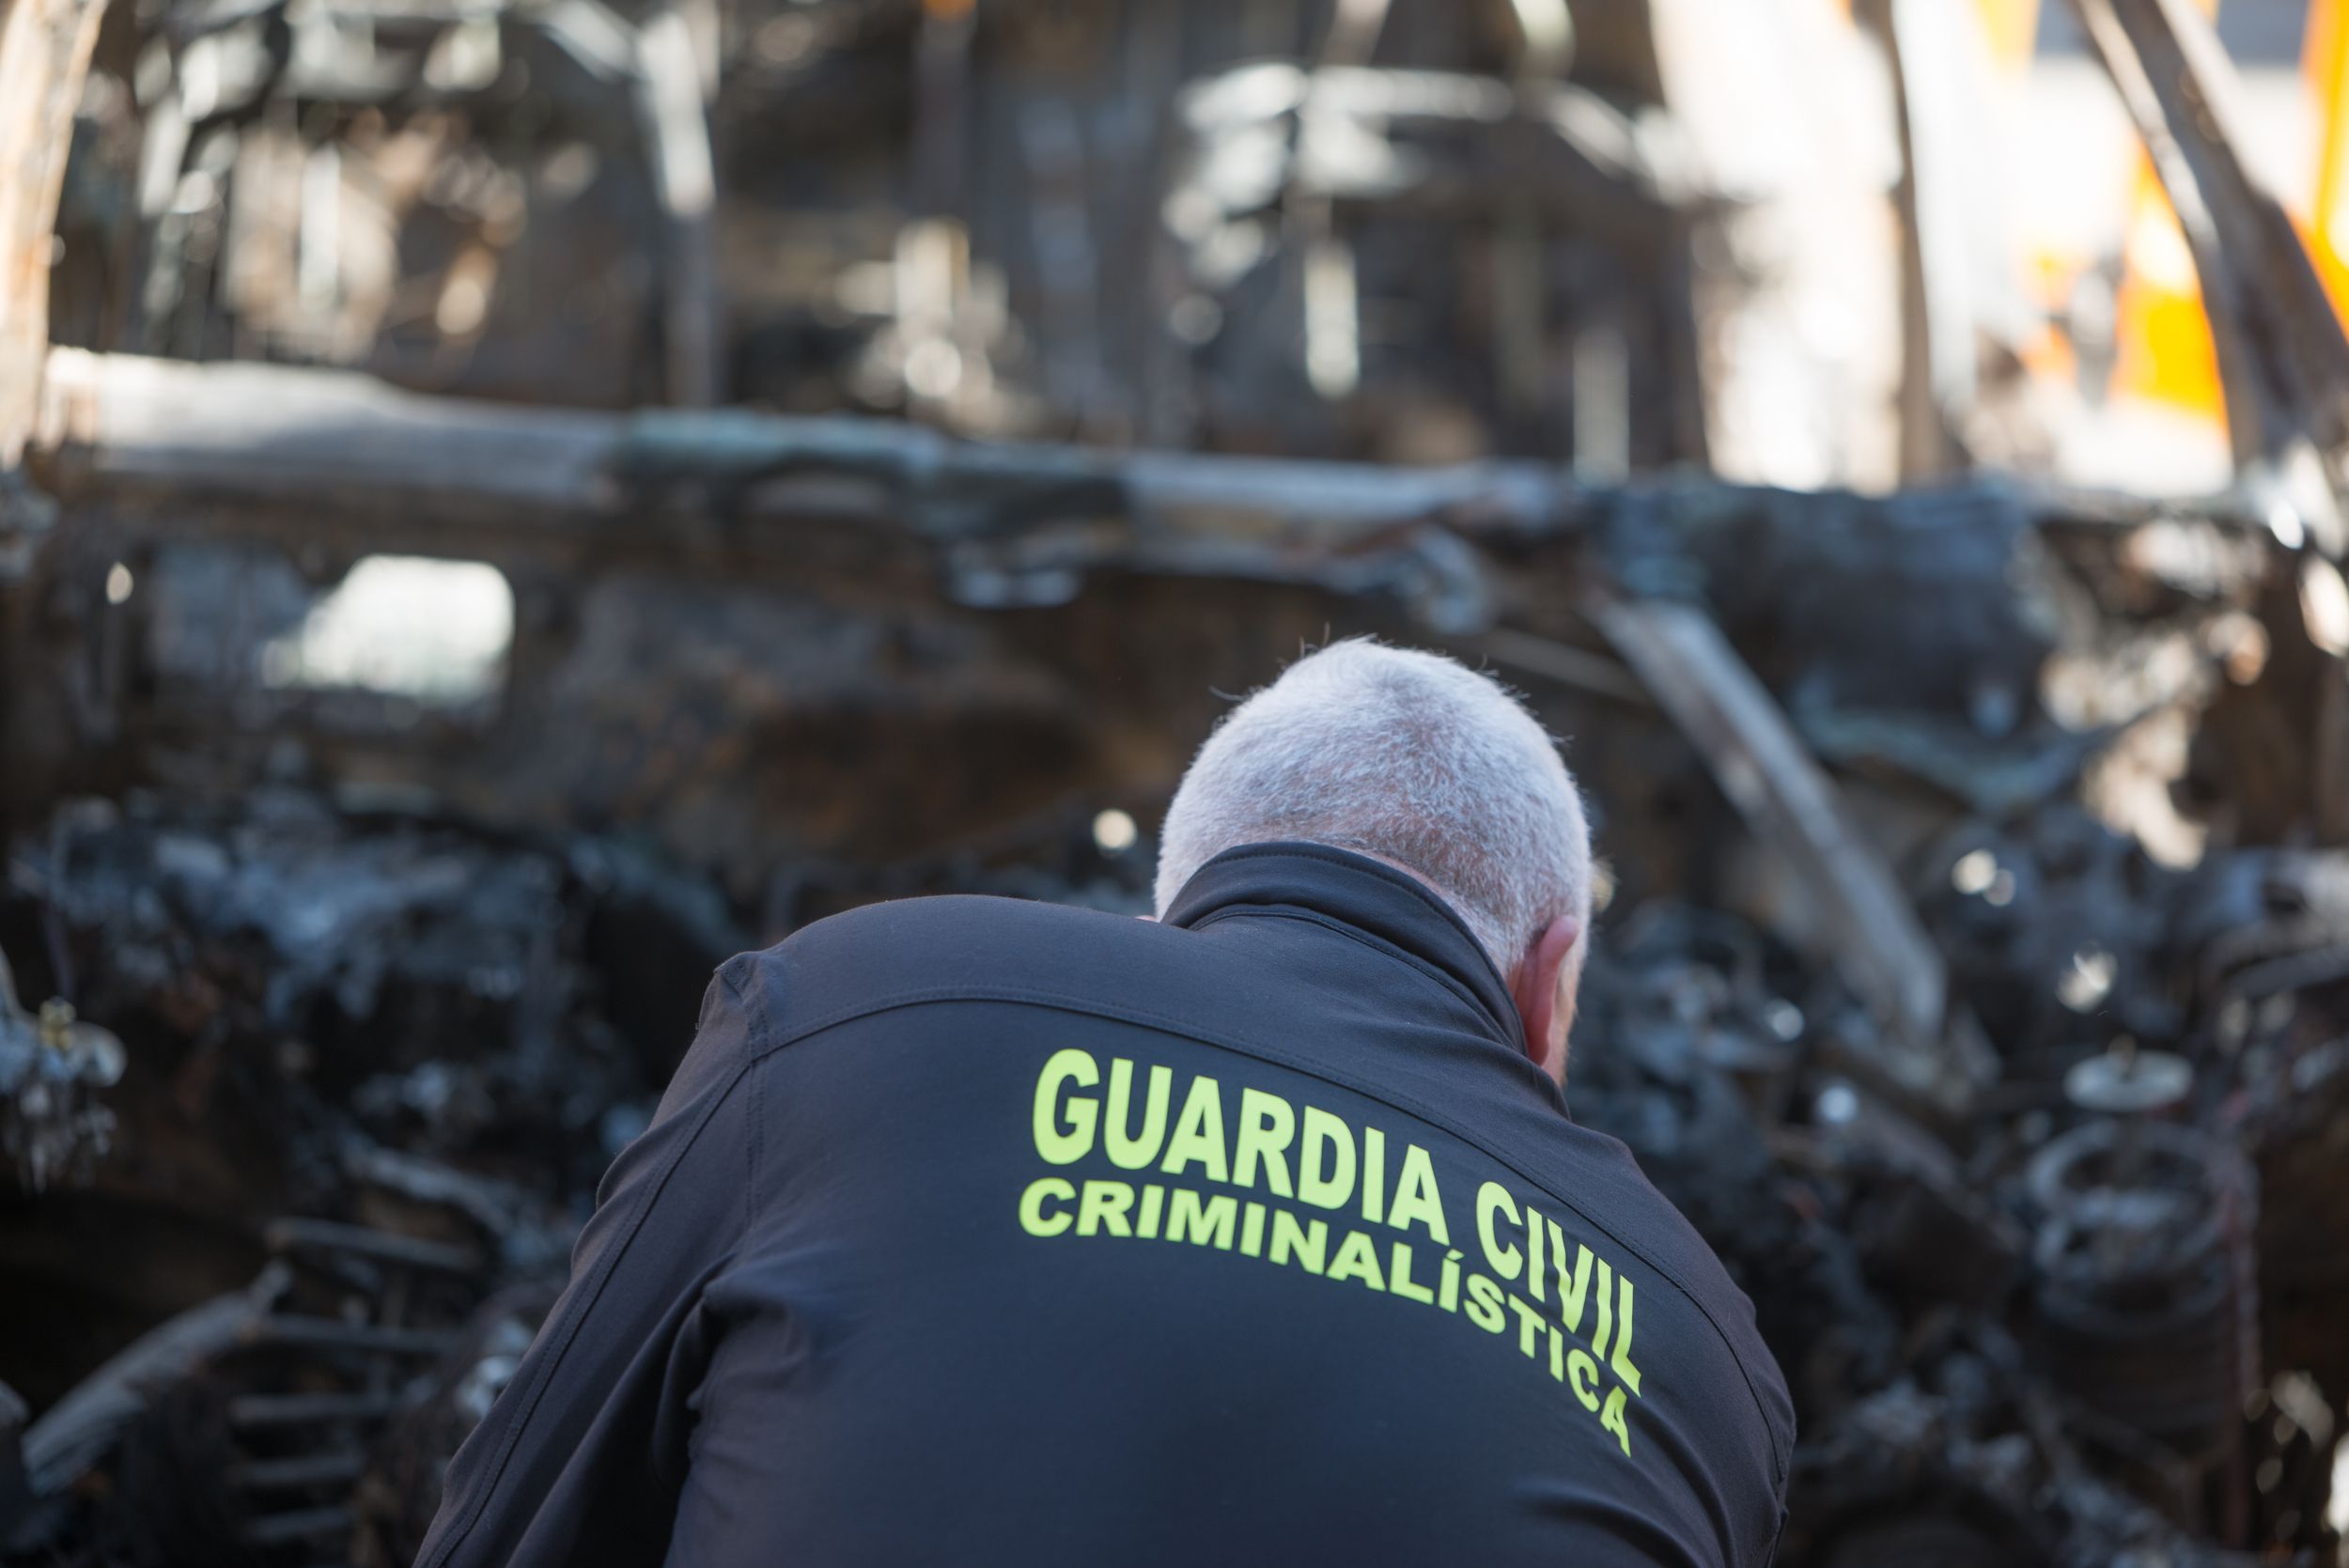 Encuentran muertos con signos de violencia a tres hermanos mayores en Morata de Tajuña (Madrid). Guardia Civil